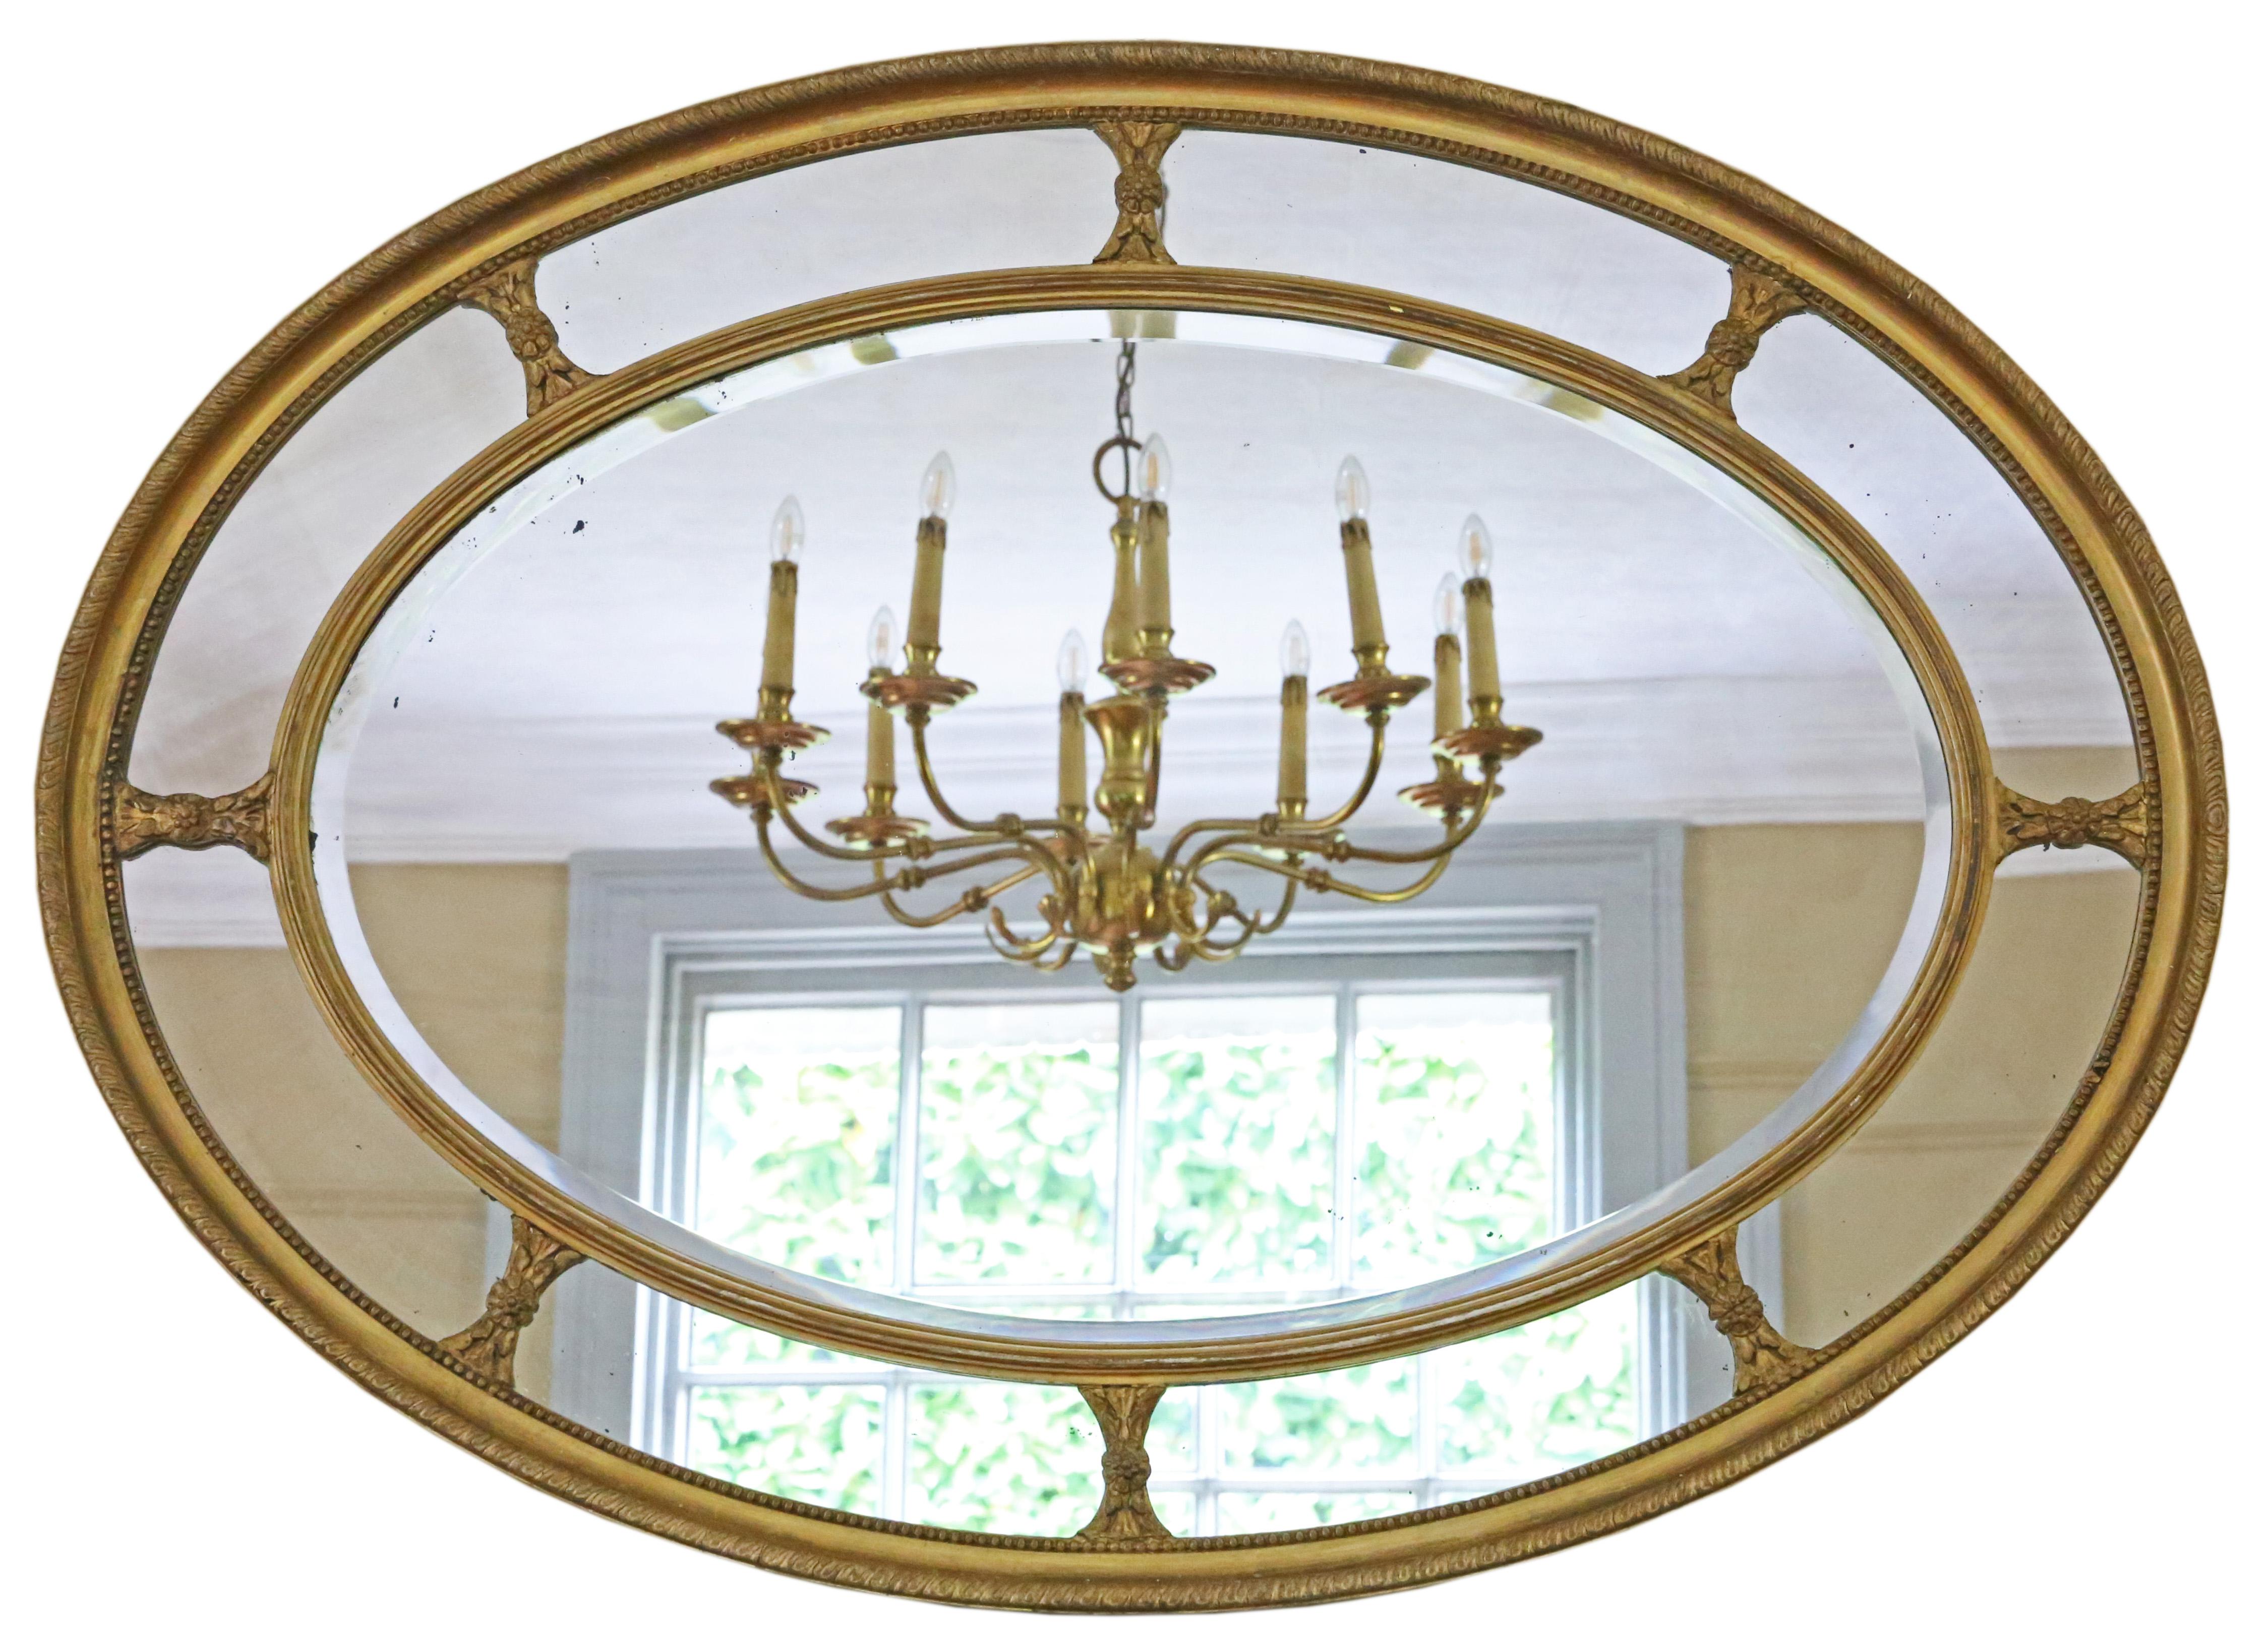 Miroir mural ovale à coussin doré de grande qualité, 19ème siècle.

Il s'agit d'une découverte rare et impressionnante, qui trouverait sa place au bon endroit. Il n'y a pas de joints lâches ni de ver à bois.

Le verre miroir principal à bord